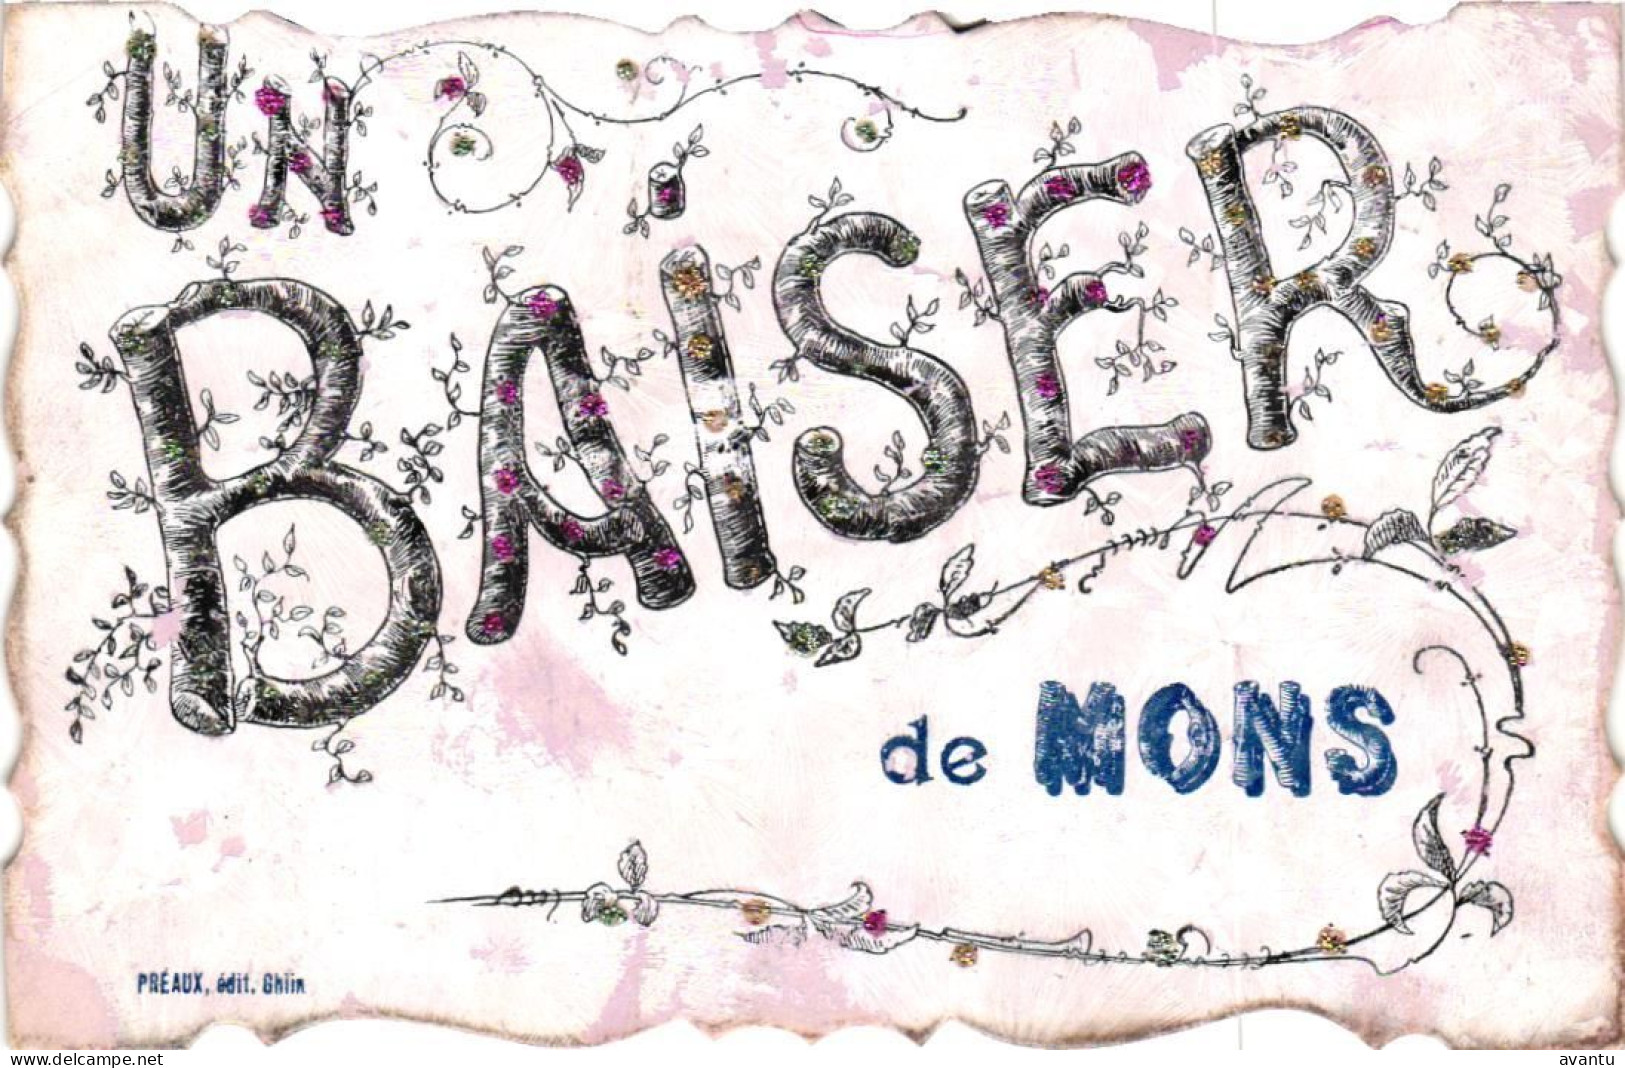 MONS / UN BAISER - Mons